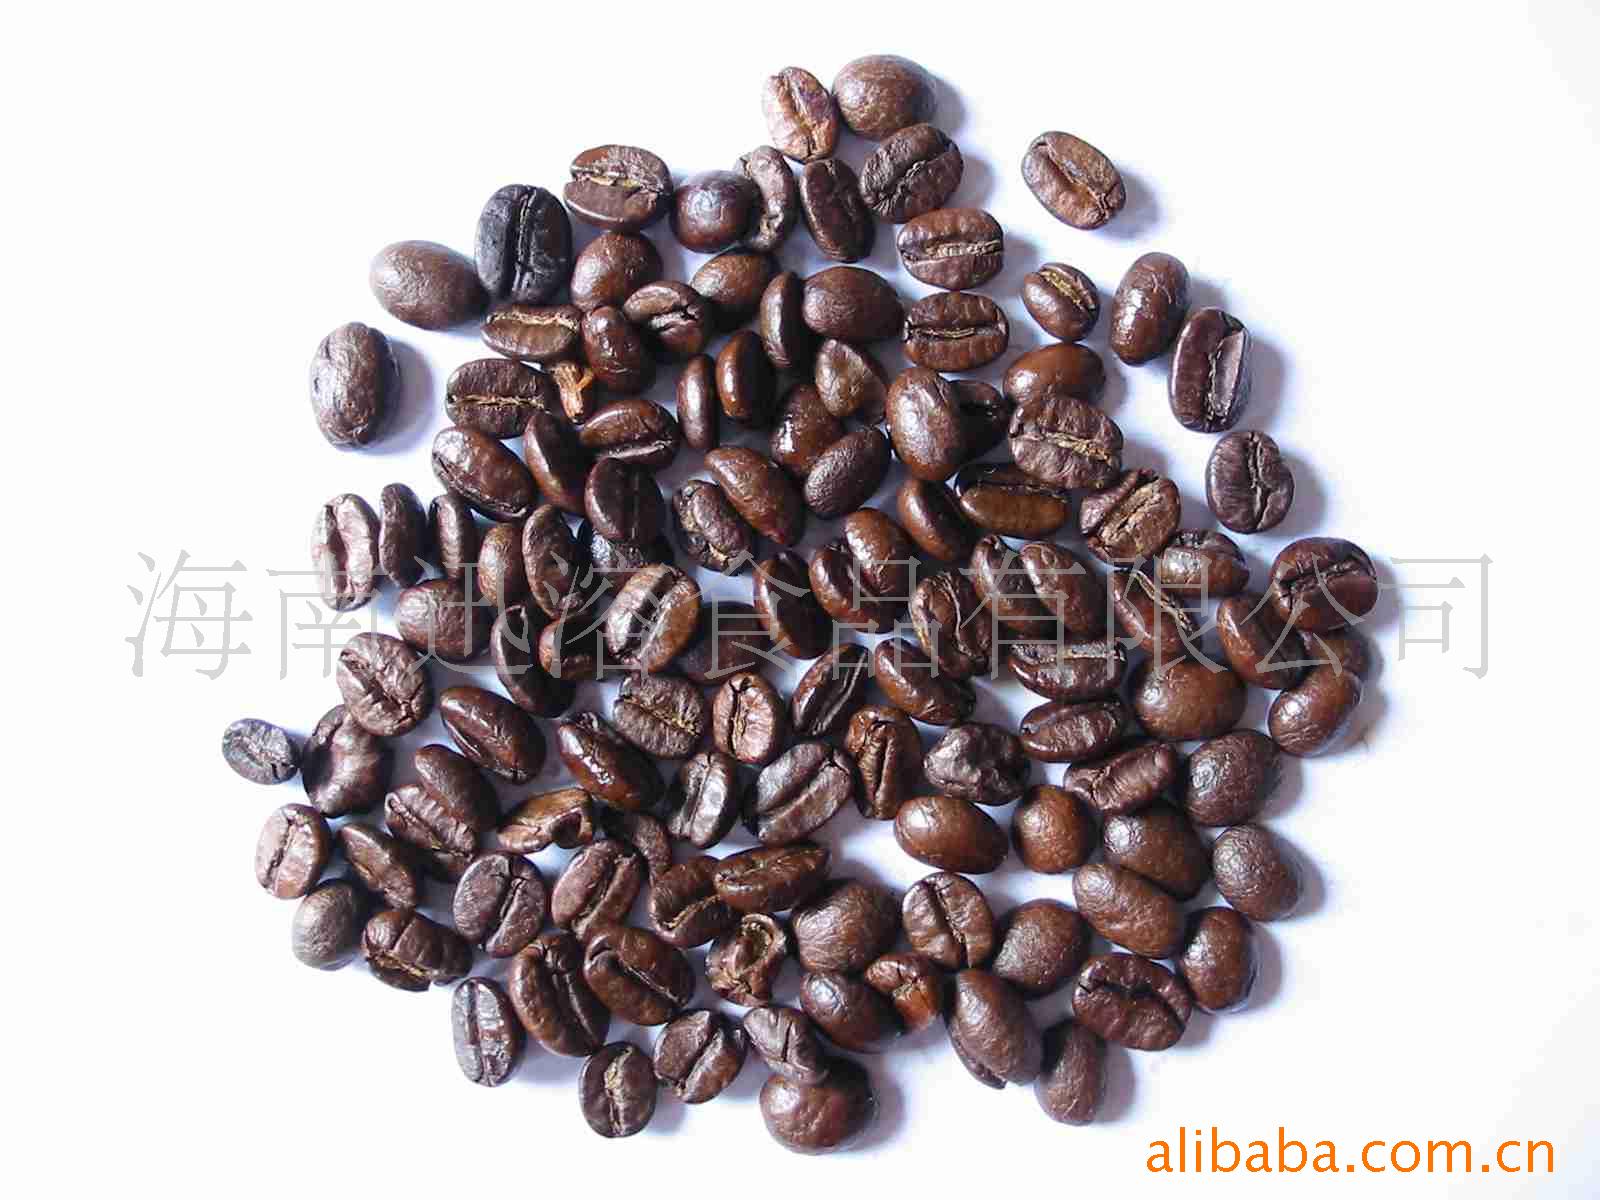 迅溶系列木炭烘焙-哥伦比亚咖啡豆信息